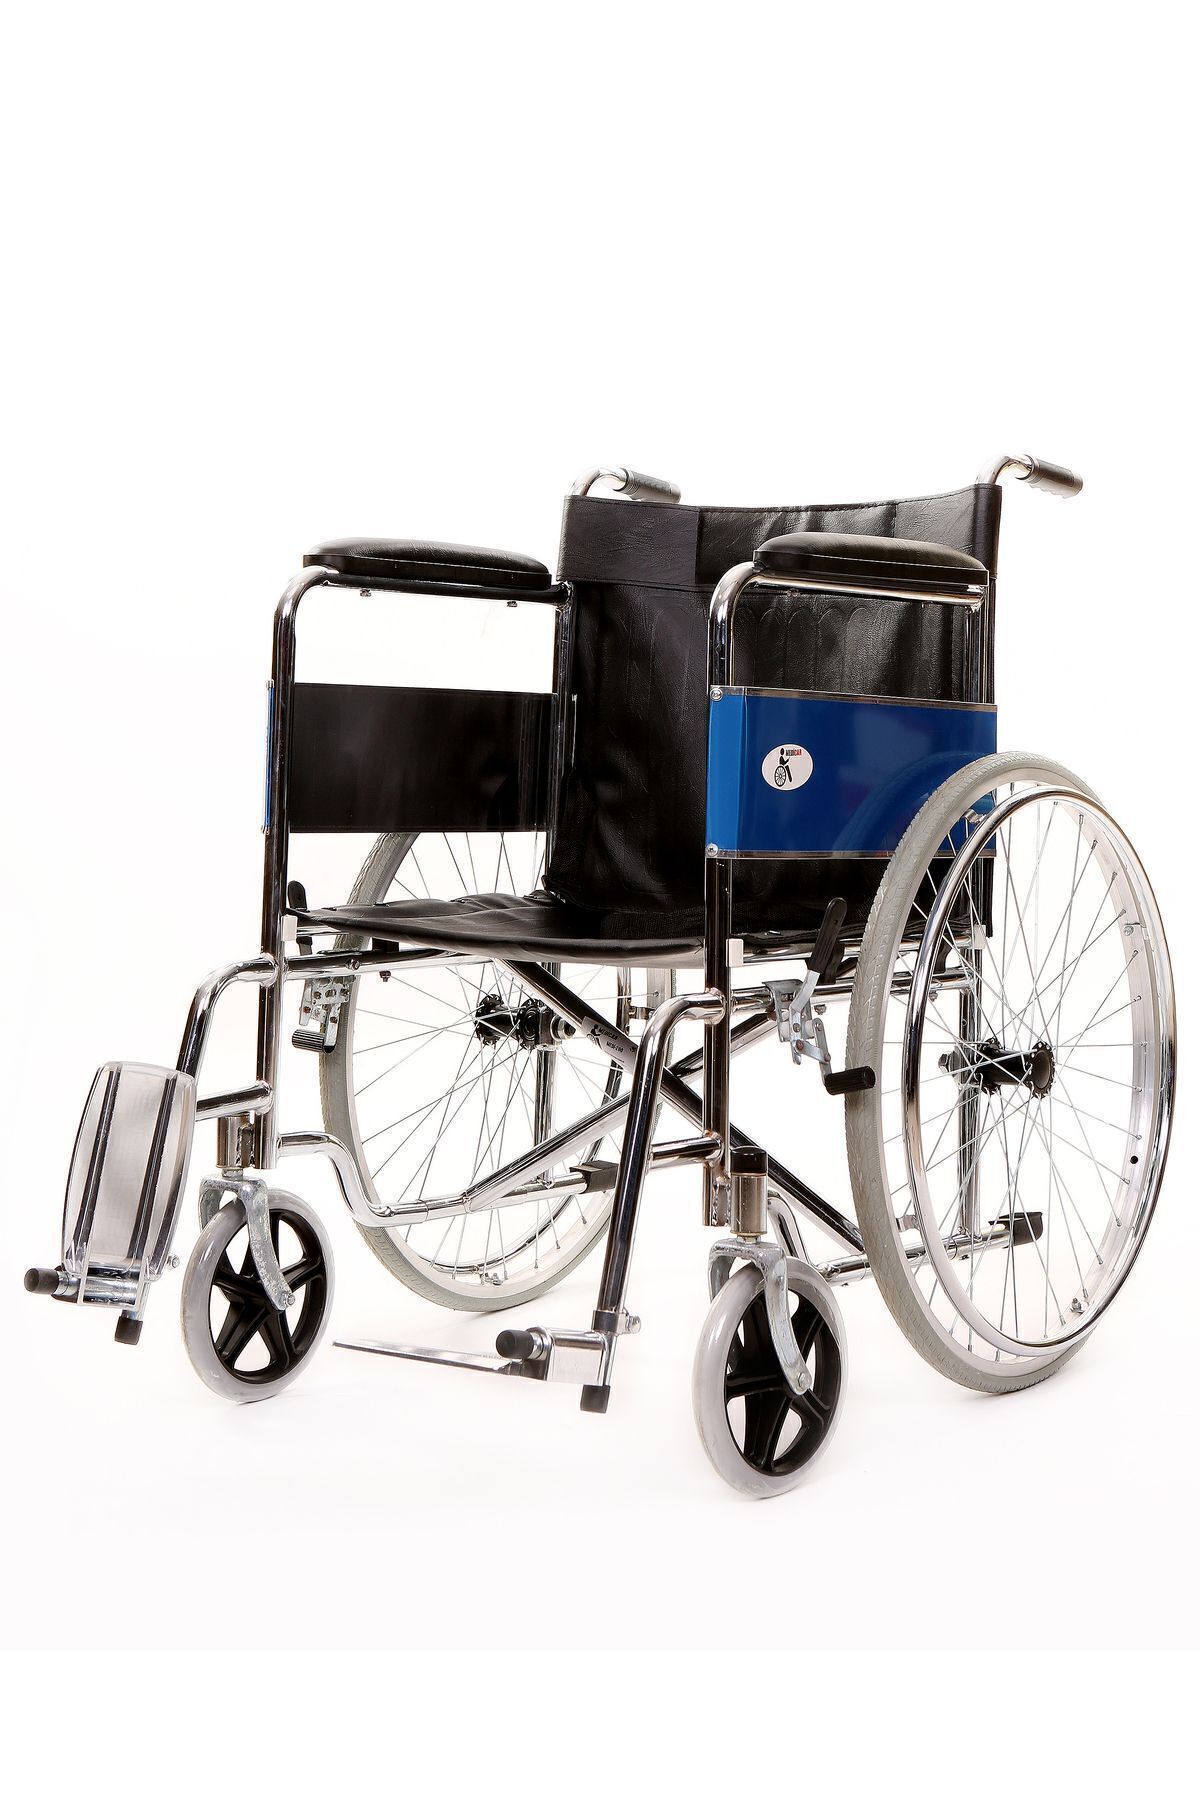 MEDİCAR 120 Kg Taşıma Kapasitesi Katlanabilir Bağışa Uygun Emniyet Kemerli Manuel Tekerlekli Sandalye